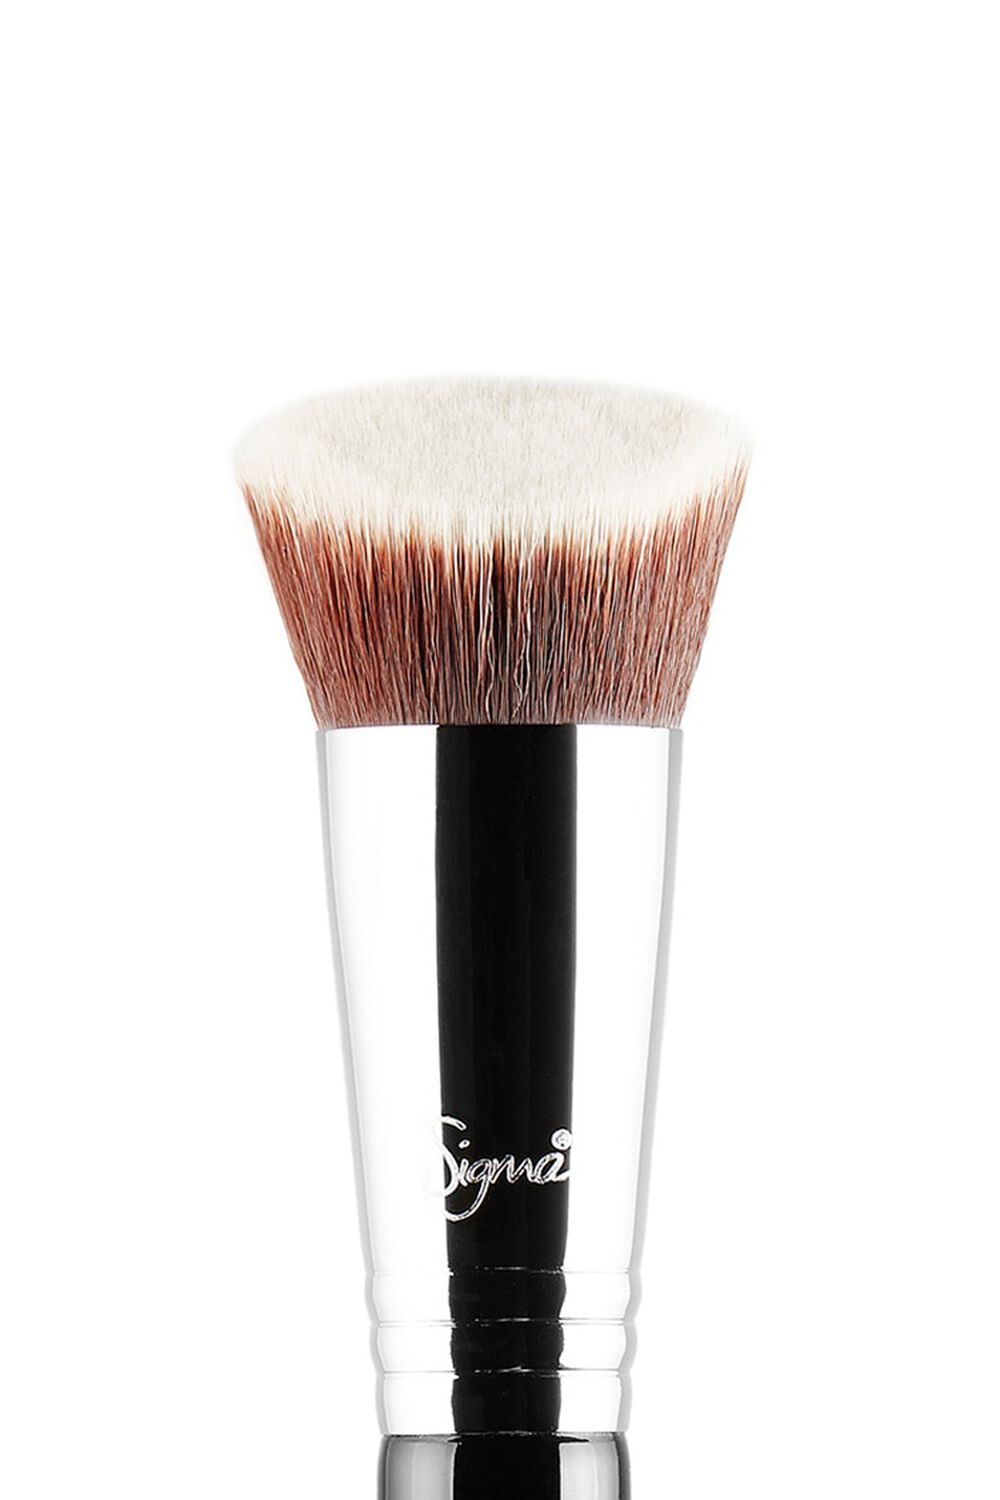 Sigma Beauty F89 Bake Kabuki Brush, image 2